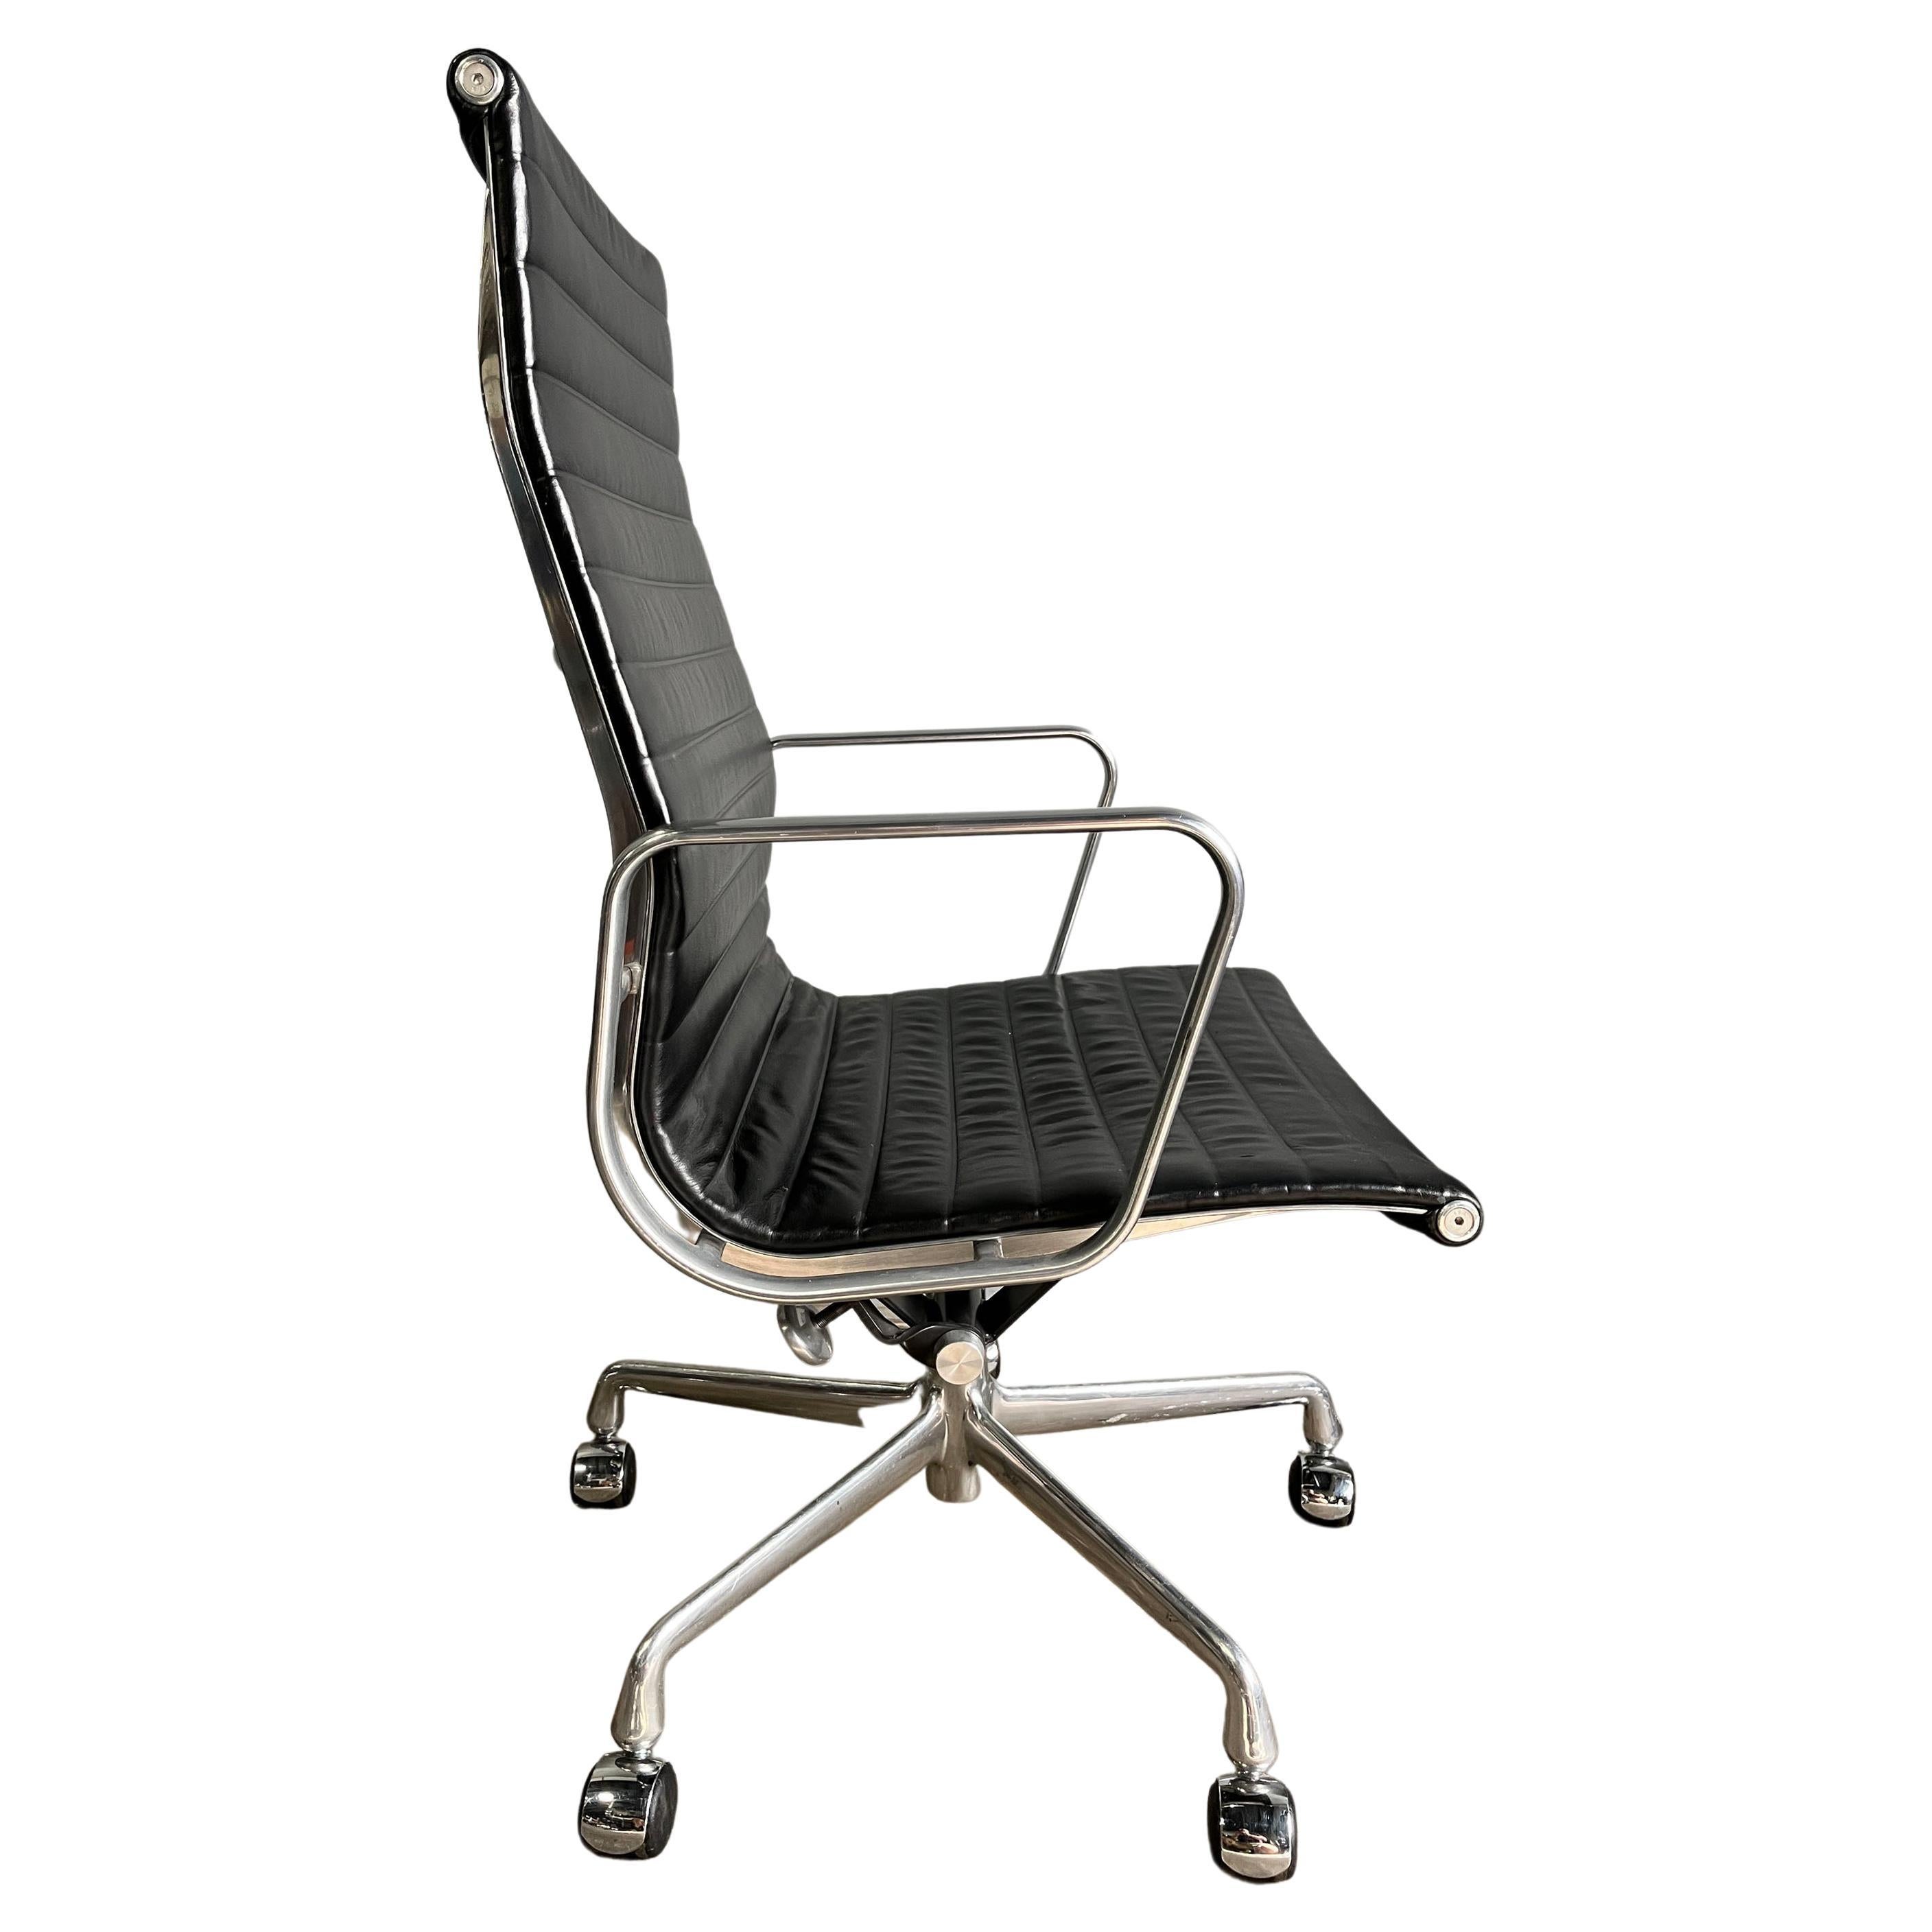 Demandez un devis d'expédition personnalisé

A vendre, ces authentiques chaises Eames pour Herman Miller Aluminum Group en cuir noir de première qualité avec dossier haut. Une icône du design moderne du milieu du siècle qui continue d'être produite